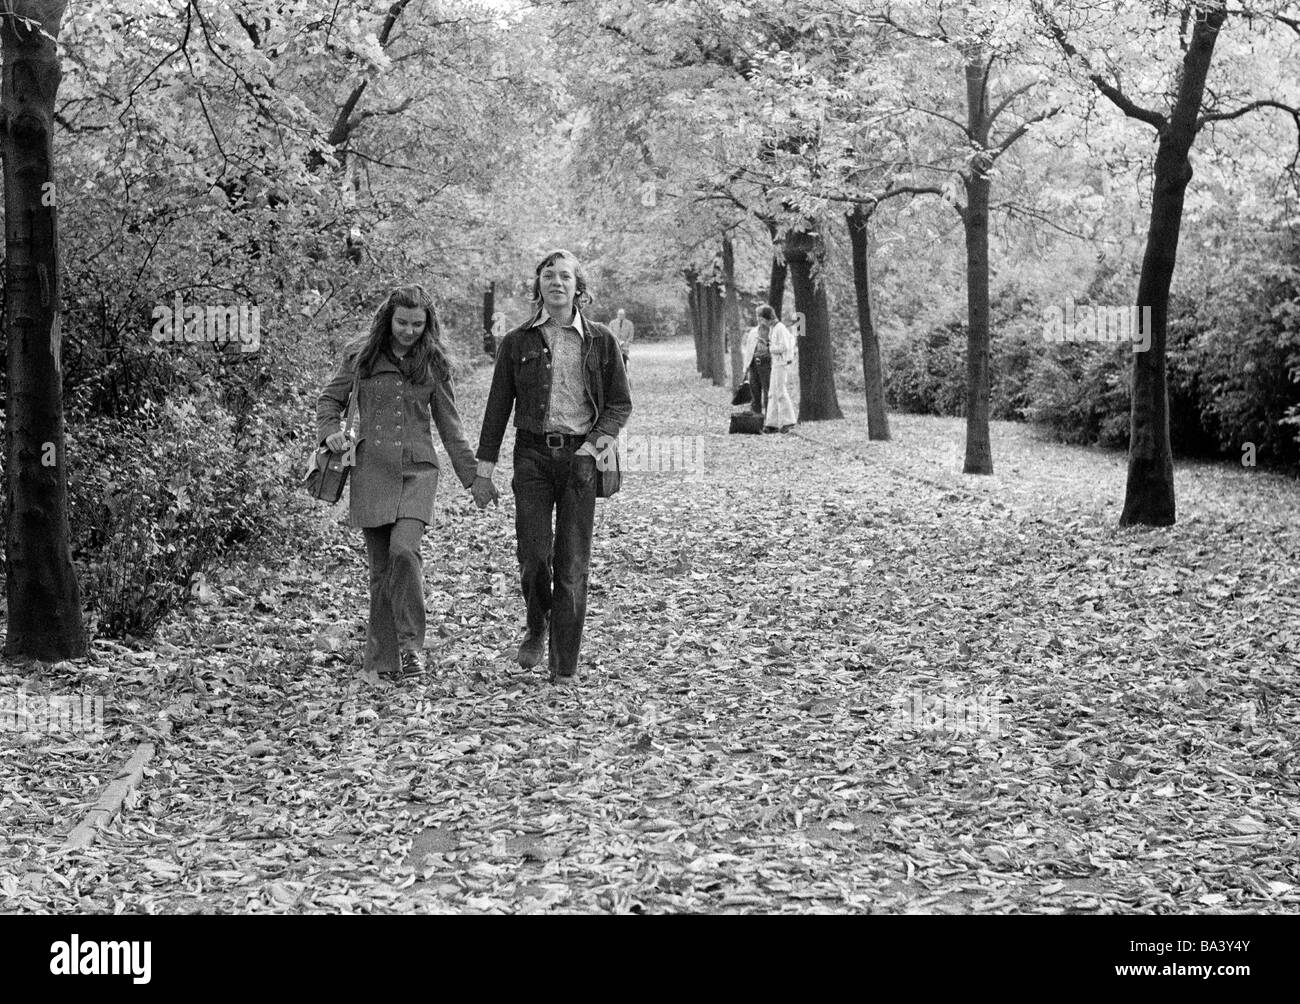 Der siebziger Jahre, schwarz / weiß Foto, Herbst, junges Paar unternimmt einen Spaziergang im Park, im Alter von 16 bis 20 Jahren, D-Bottrop, Ruhrgebiet, Nordrhein-Westfalen Stockfoto